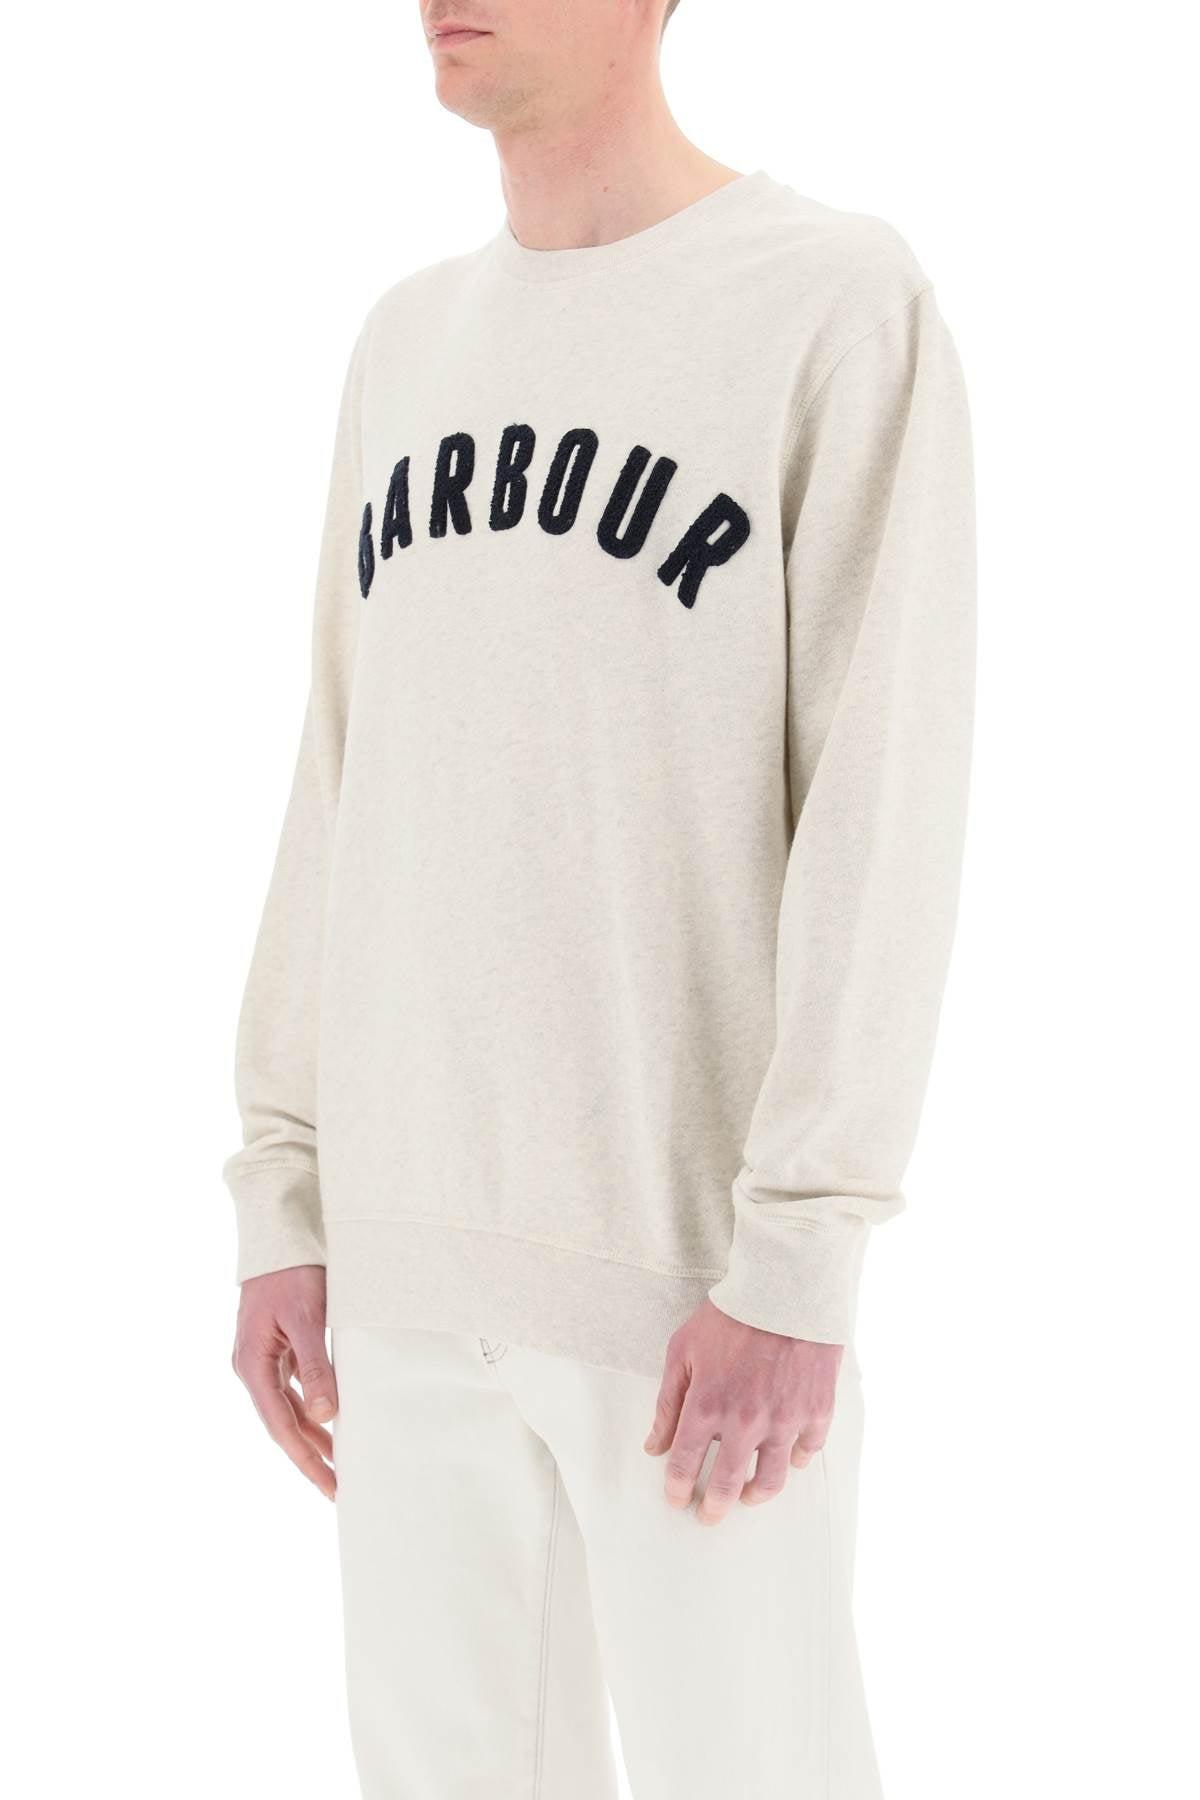 Barbour Cotton Logo Sweatshirt for Men - Save 5% | Lyst